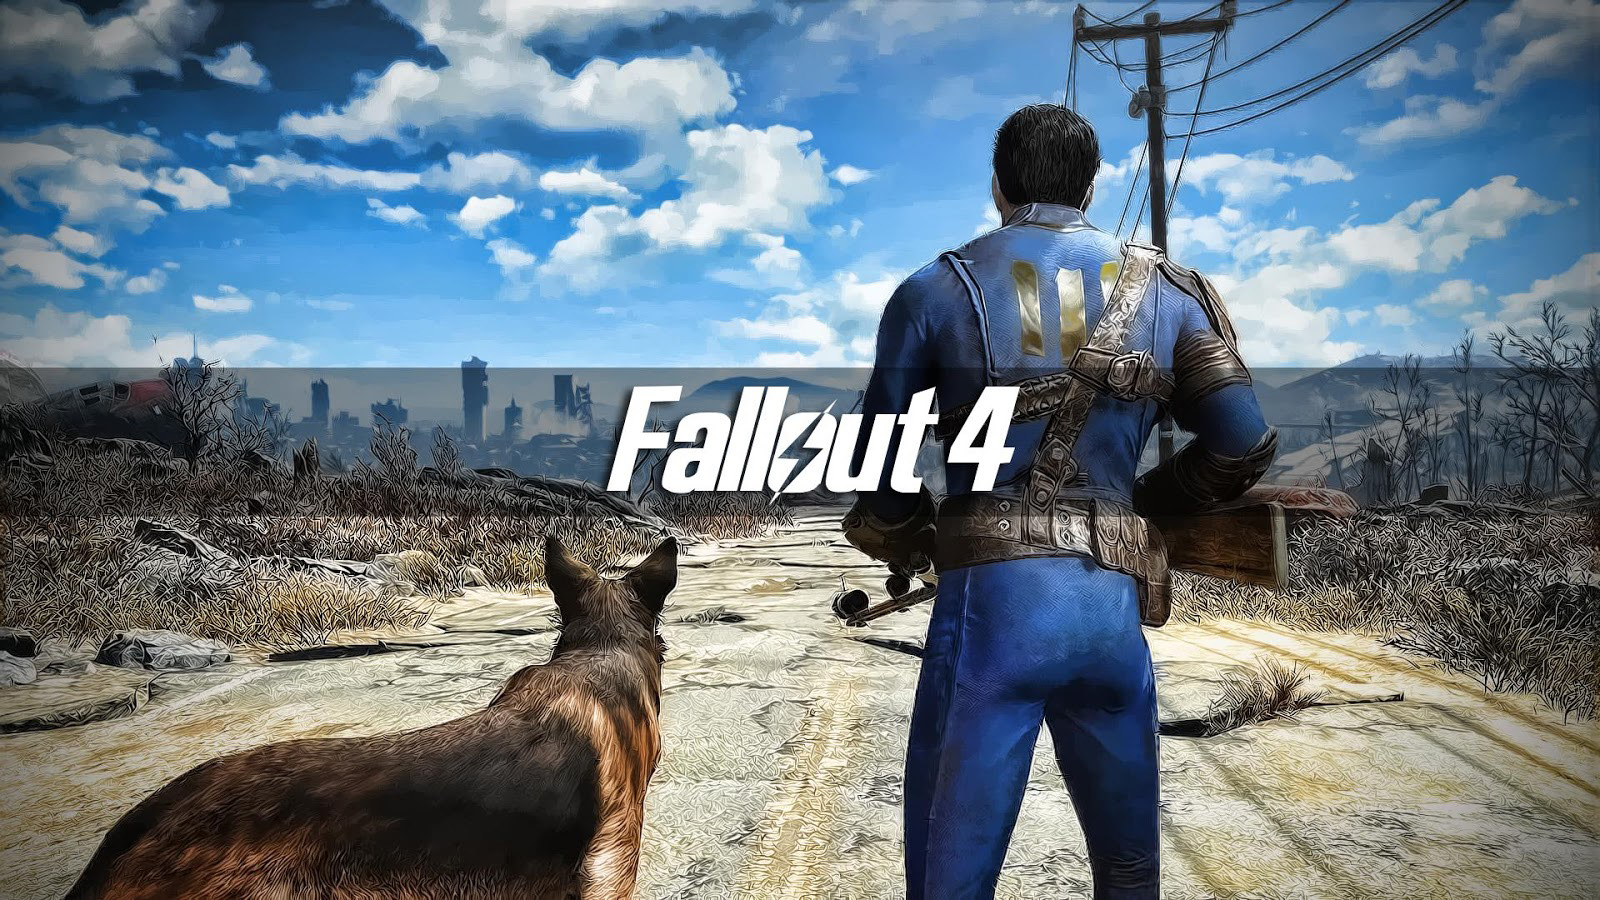 Fallout 4 Network World News